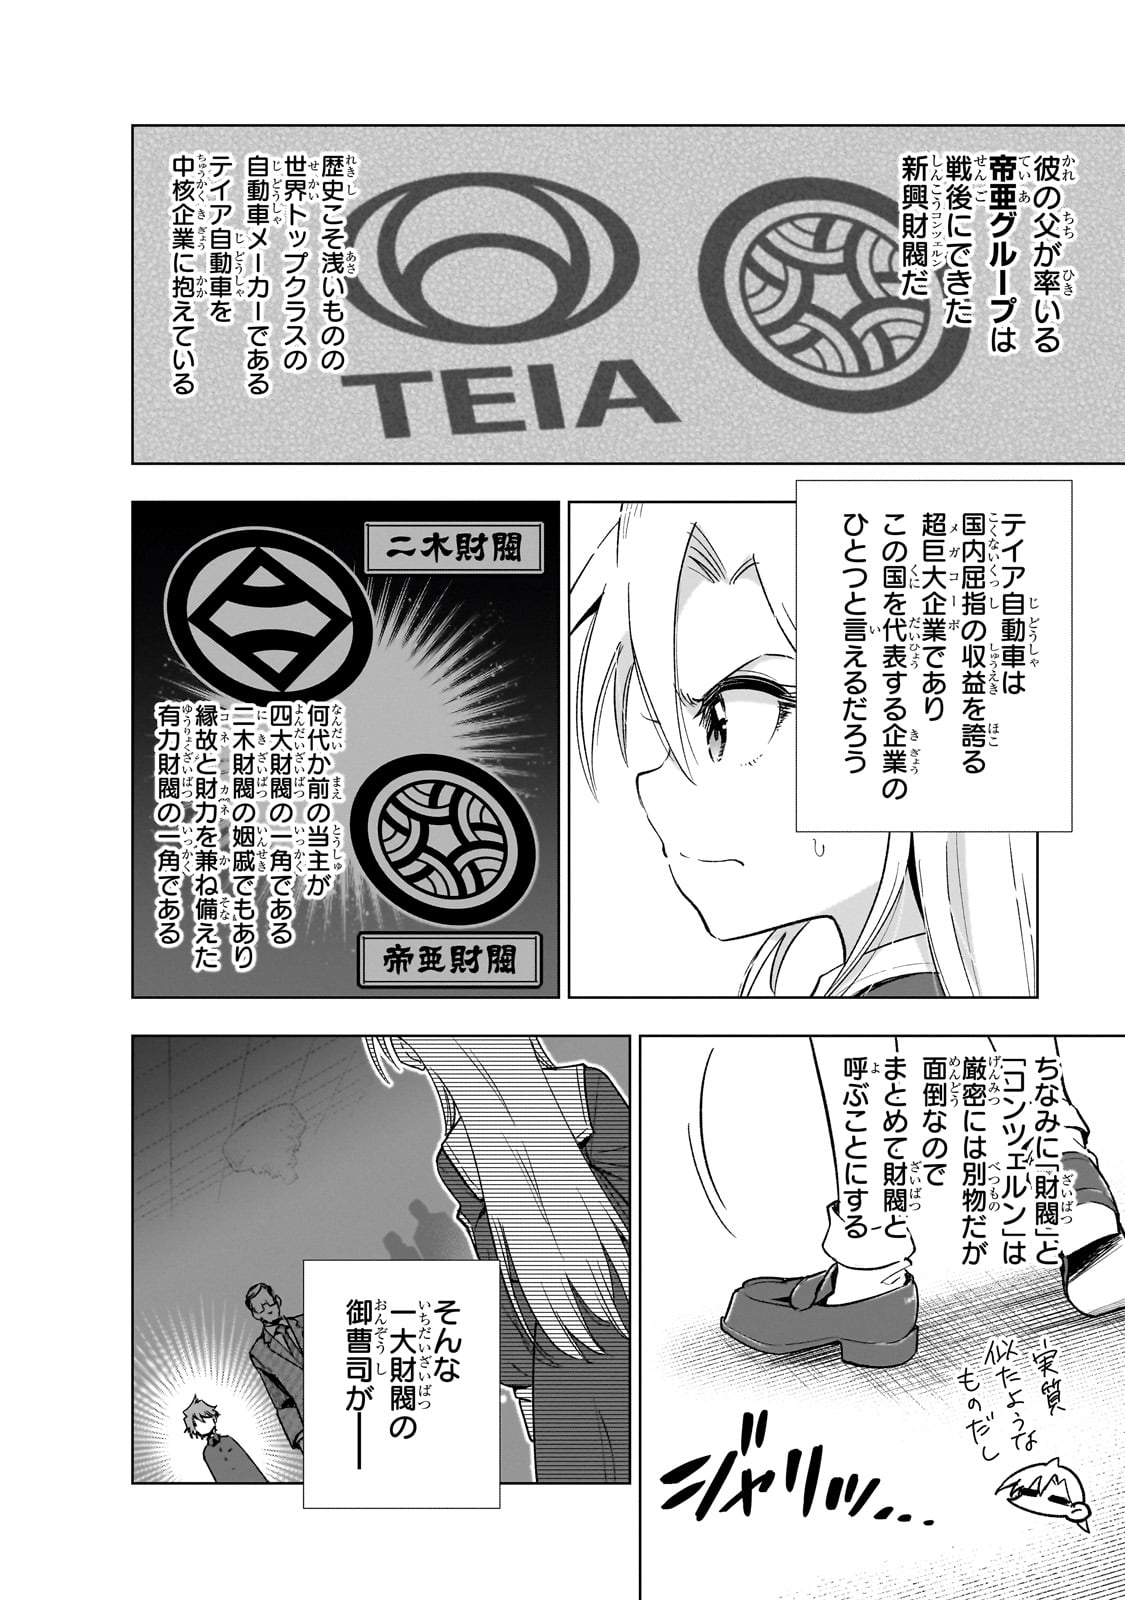 Gendai Shakai de Otome Game no Akuyaku Reijou wo suru no wa Chotto Taihen - Chapter 13 - Page 4